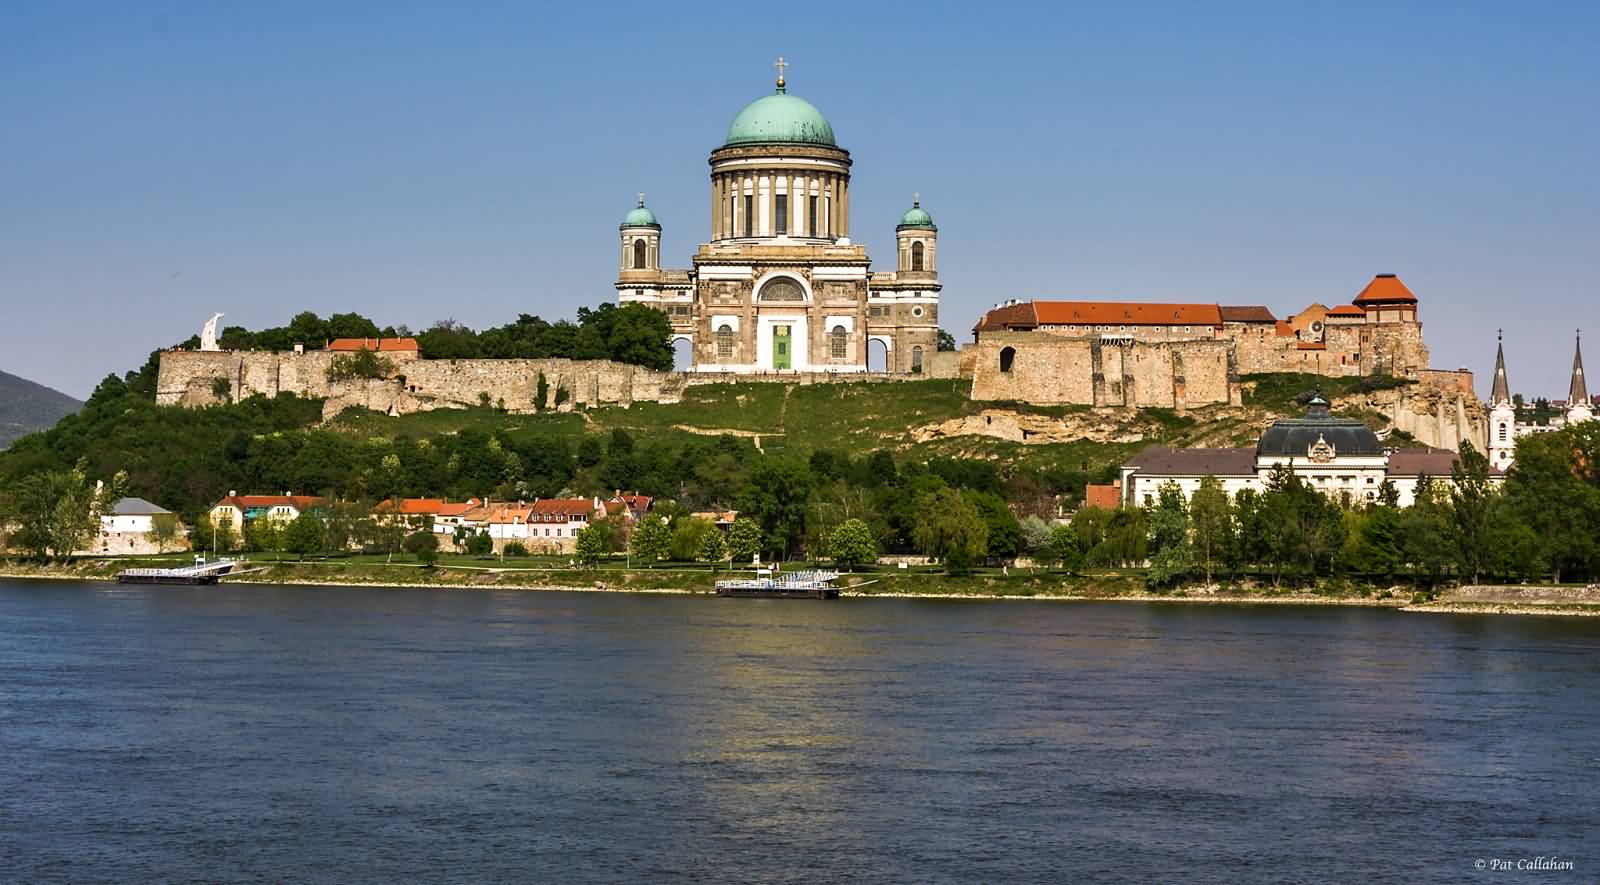 The Esztergom Basilica View Across The River